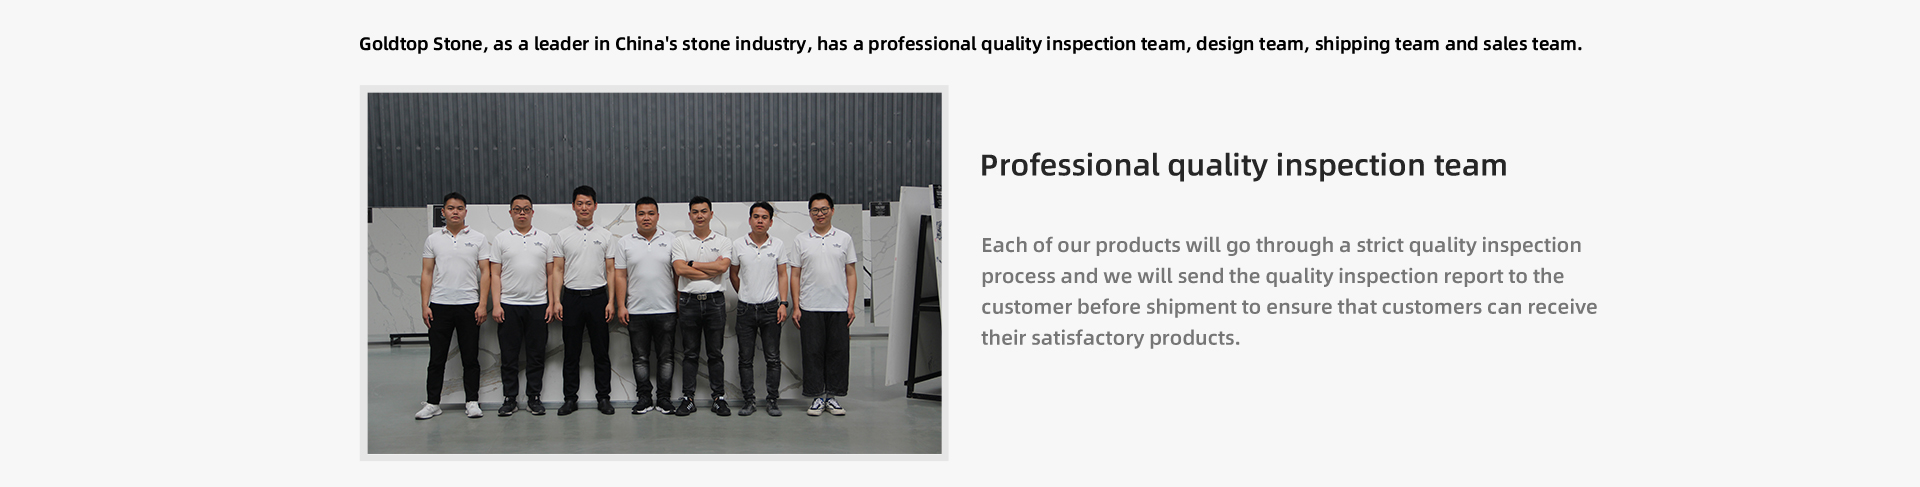 Każdy z naszych produktów przejdzie rygorystyczny proces kontroli jakości, a my wyślemy raport z kontroli jakości do klienta przed wysyłką, aby upewnić się, że klienci mogą otrzymać zadowalające produkty.